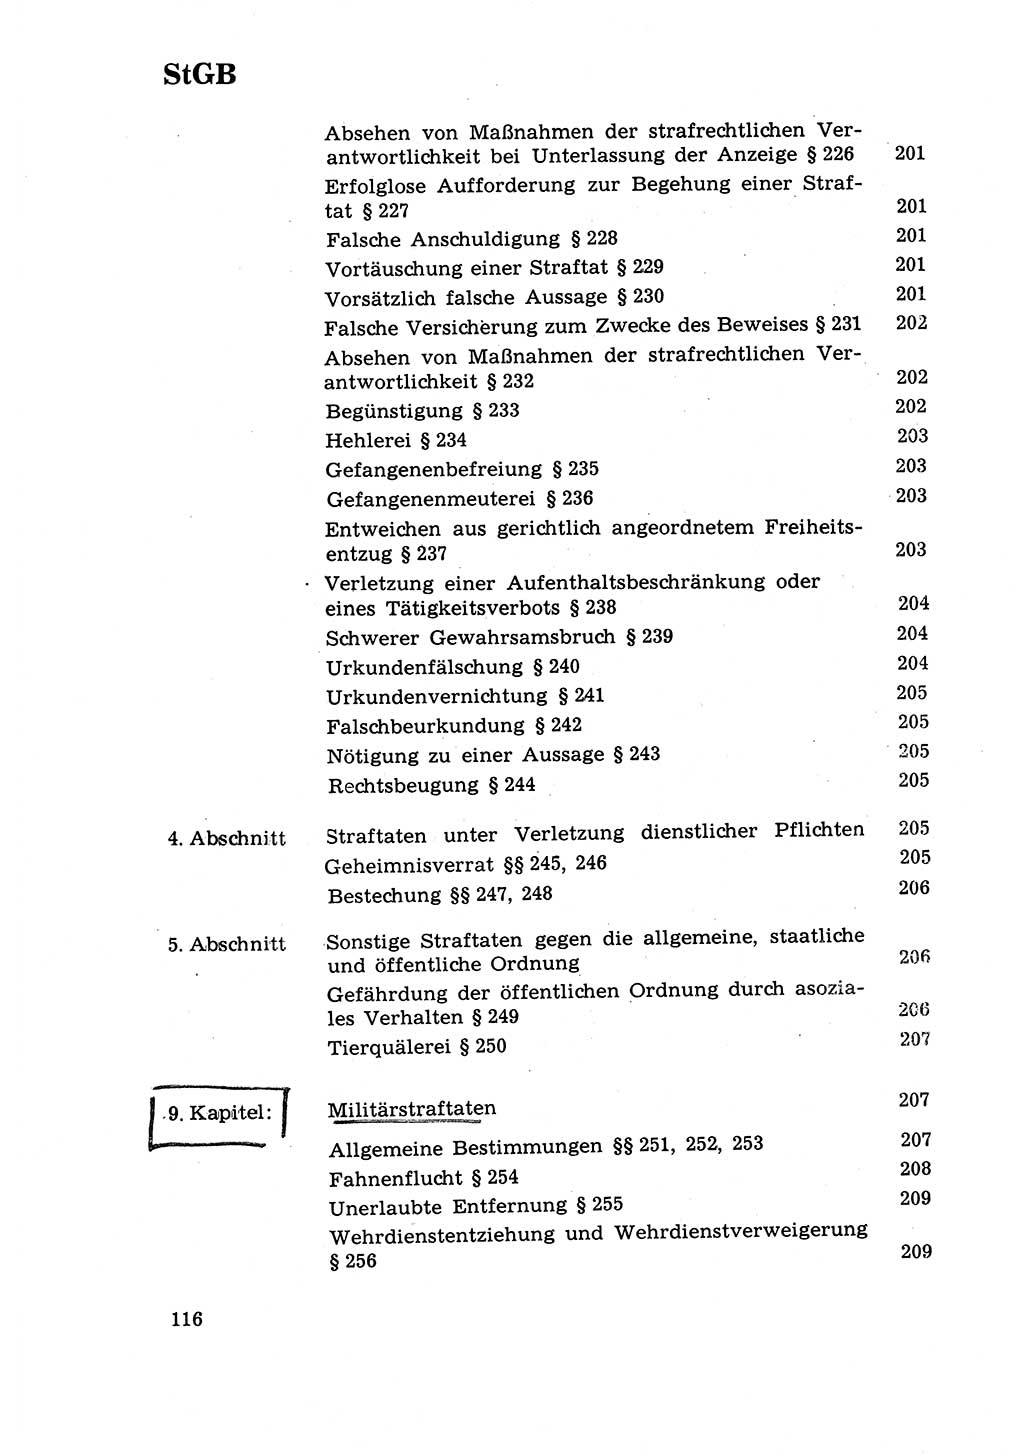 Strafrecht [Deutsche Demokratische Republik (DDR)] 1968, Seite 116 (Strafr. DDR 1968, S. 116)